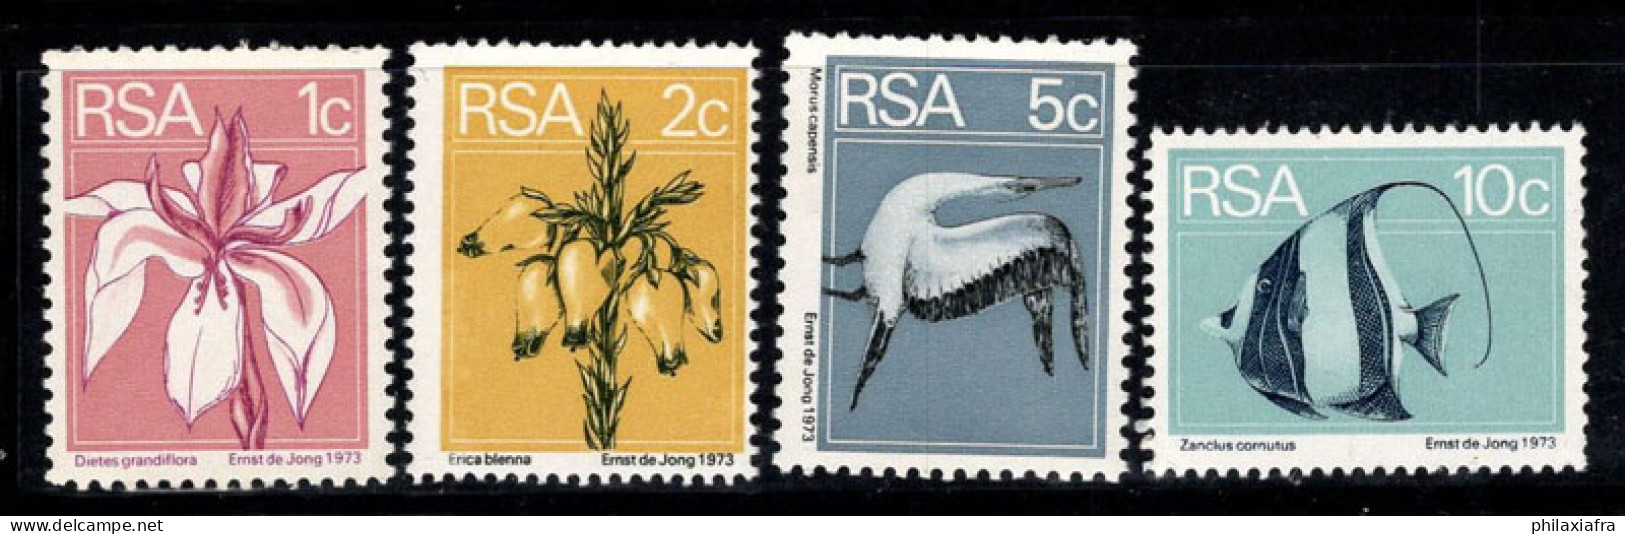 Afrique Du Sud 1974 Mi. 463A-466A Neuf ** 100% Flore Et Faune, Poissons, Fleurs - Unused Stamps